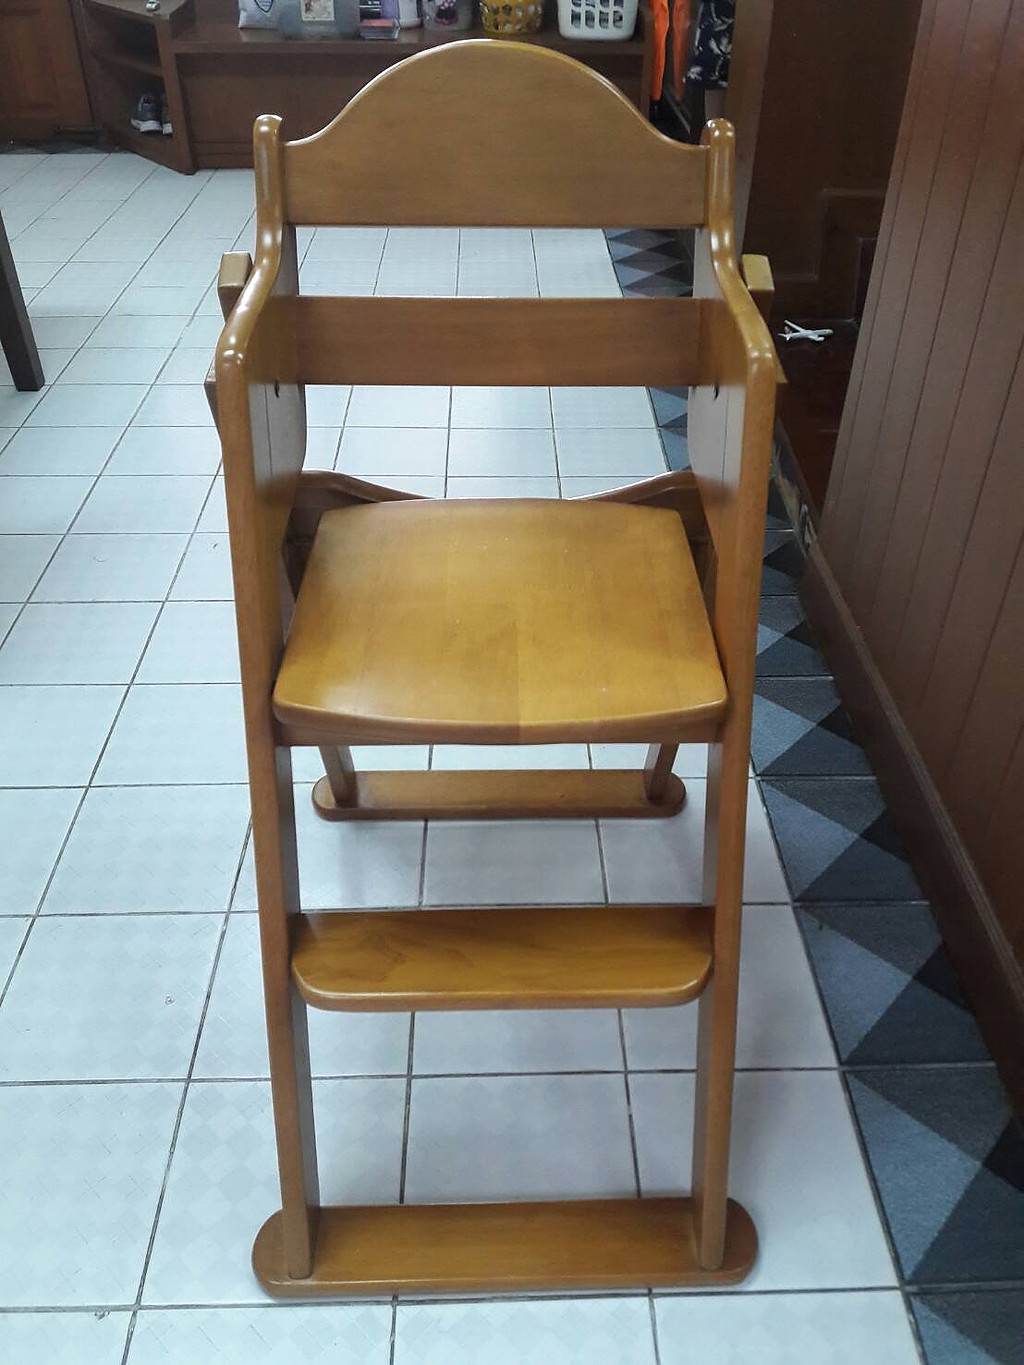 wooden high chair